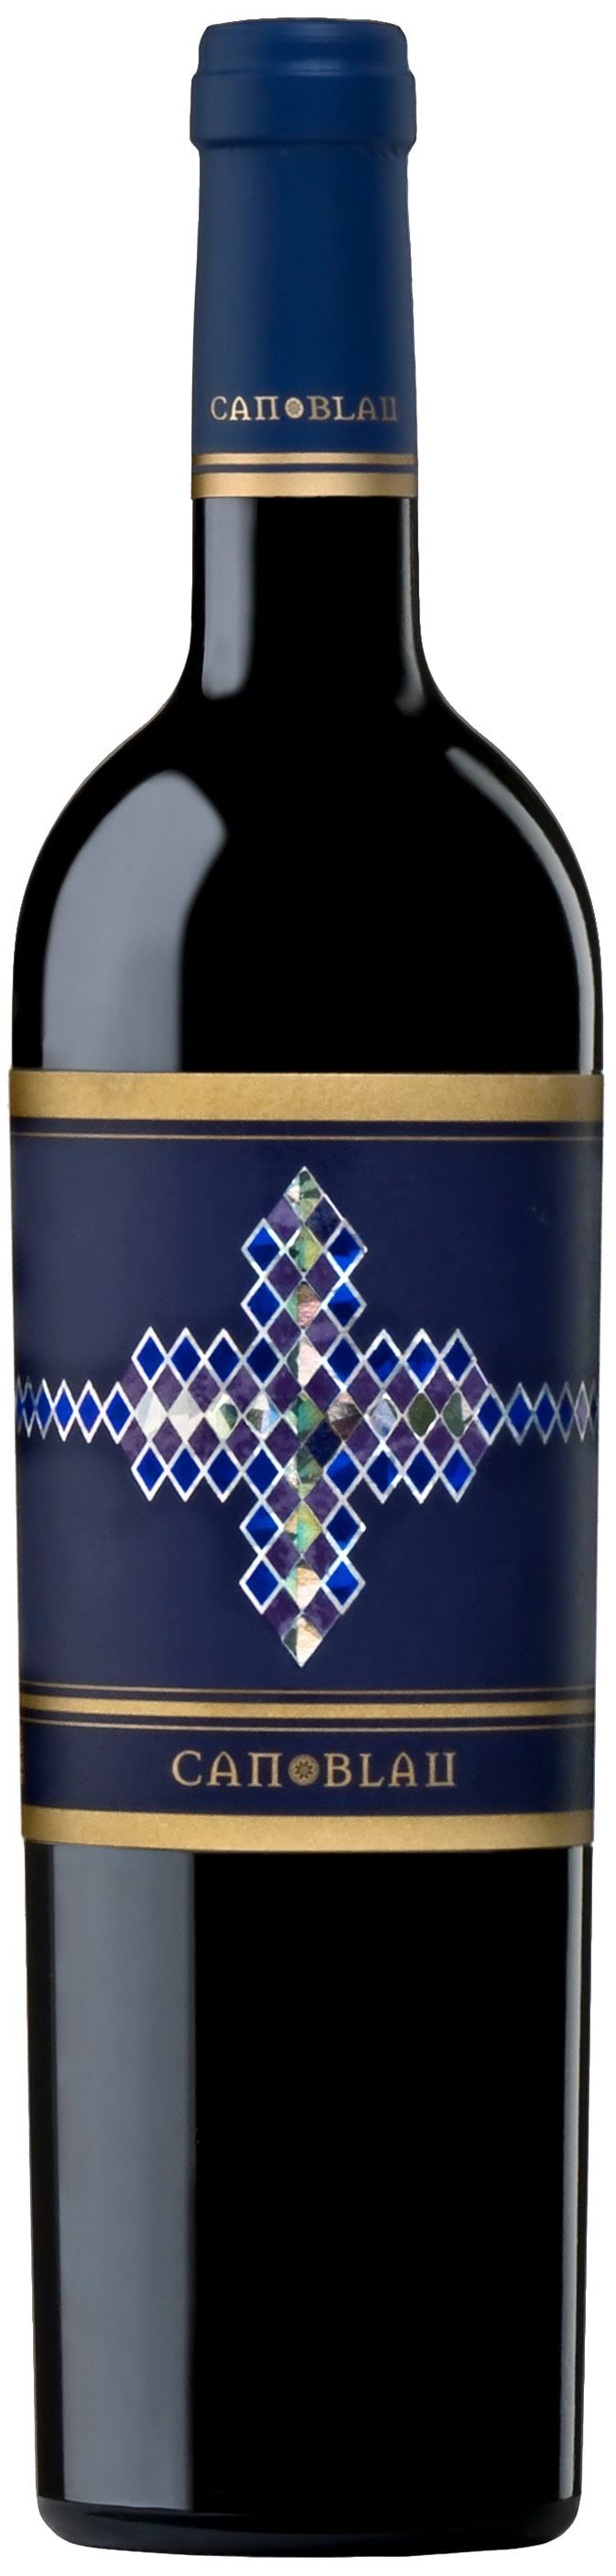 Can Blau Red Blend, Spain (Vintage Varies) - 750 ml bottle